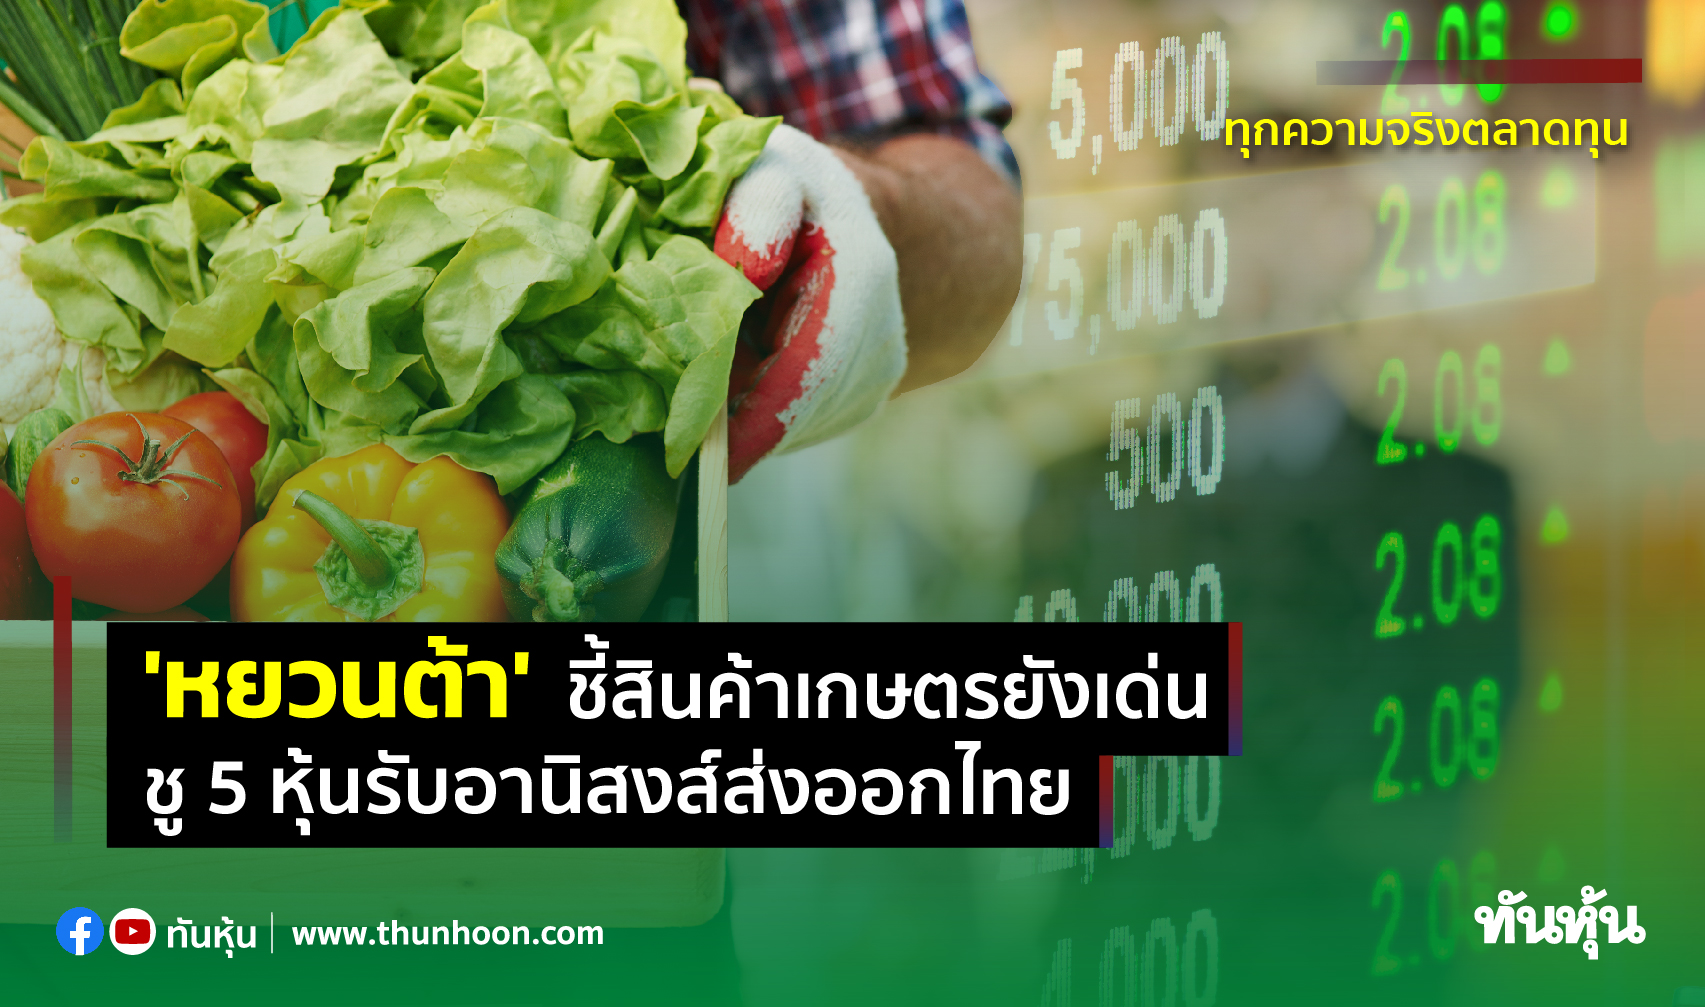 'หยวนต้า' ชี้สินค้าเกษตรยังเด่น ชู 5 หุ้นรับอานิสงส์ส่งออกไทย